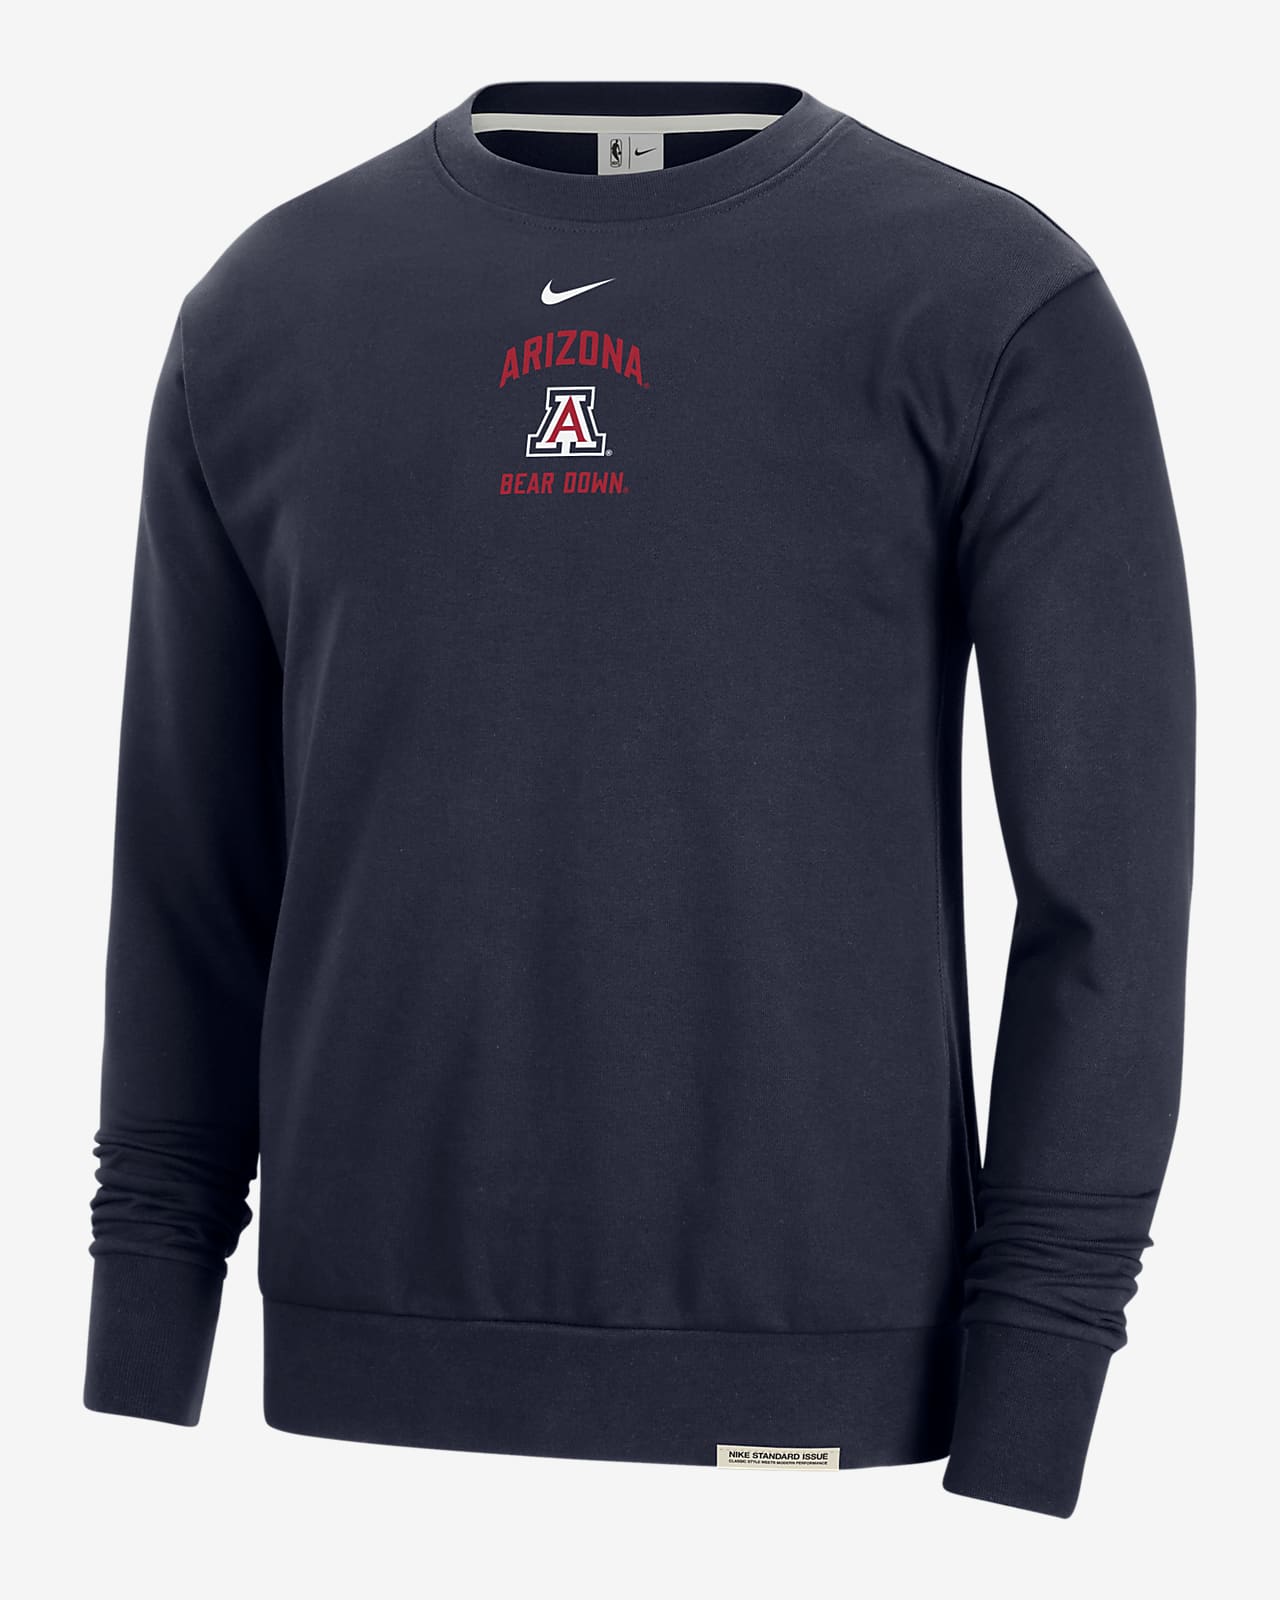 Arizona Standard Issue Men's Nike College Fleece Crew-Neck Sweatshirt